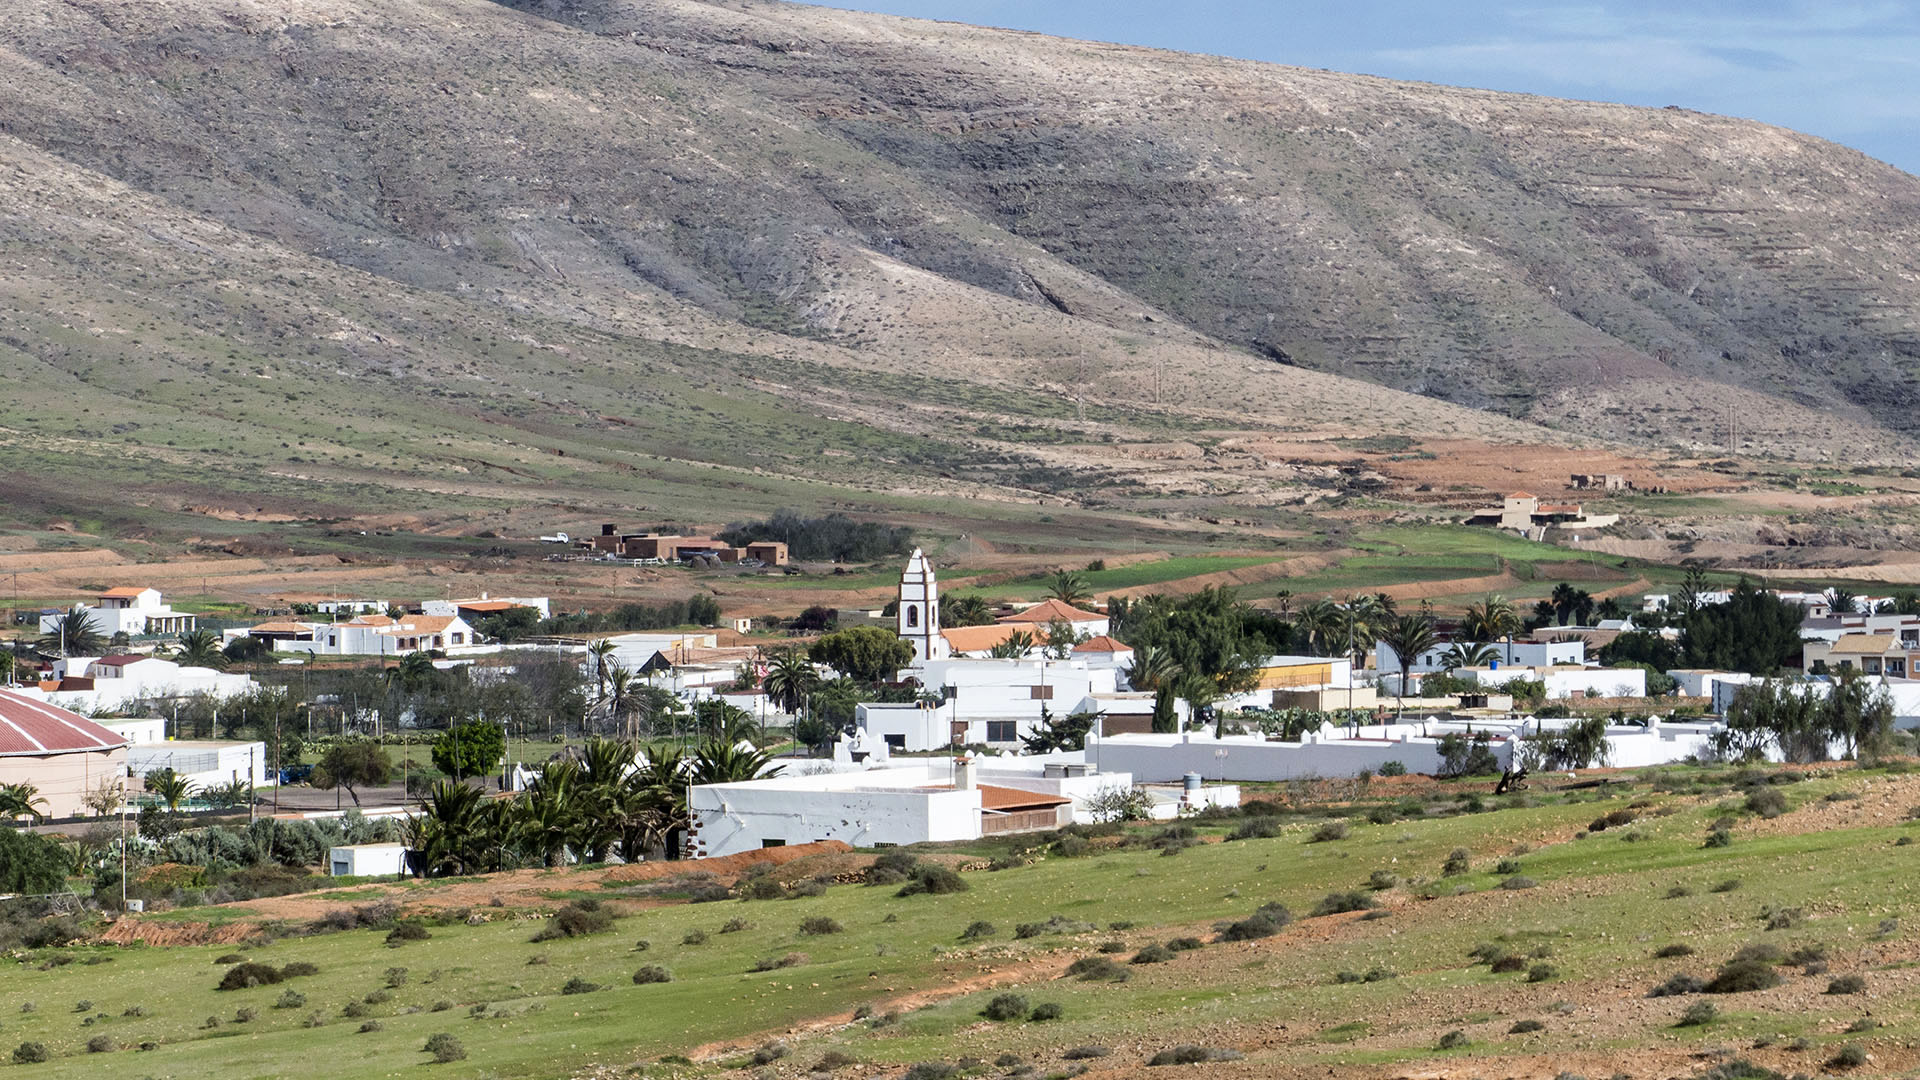 Wandern + Trekking auf Fuerteventura: Durch das Valle de Tetir nach Tefía.